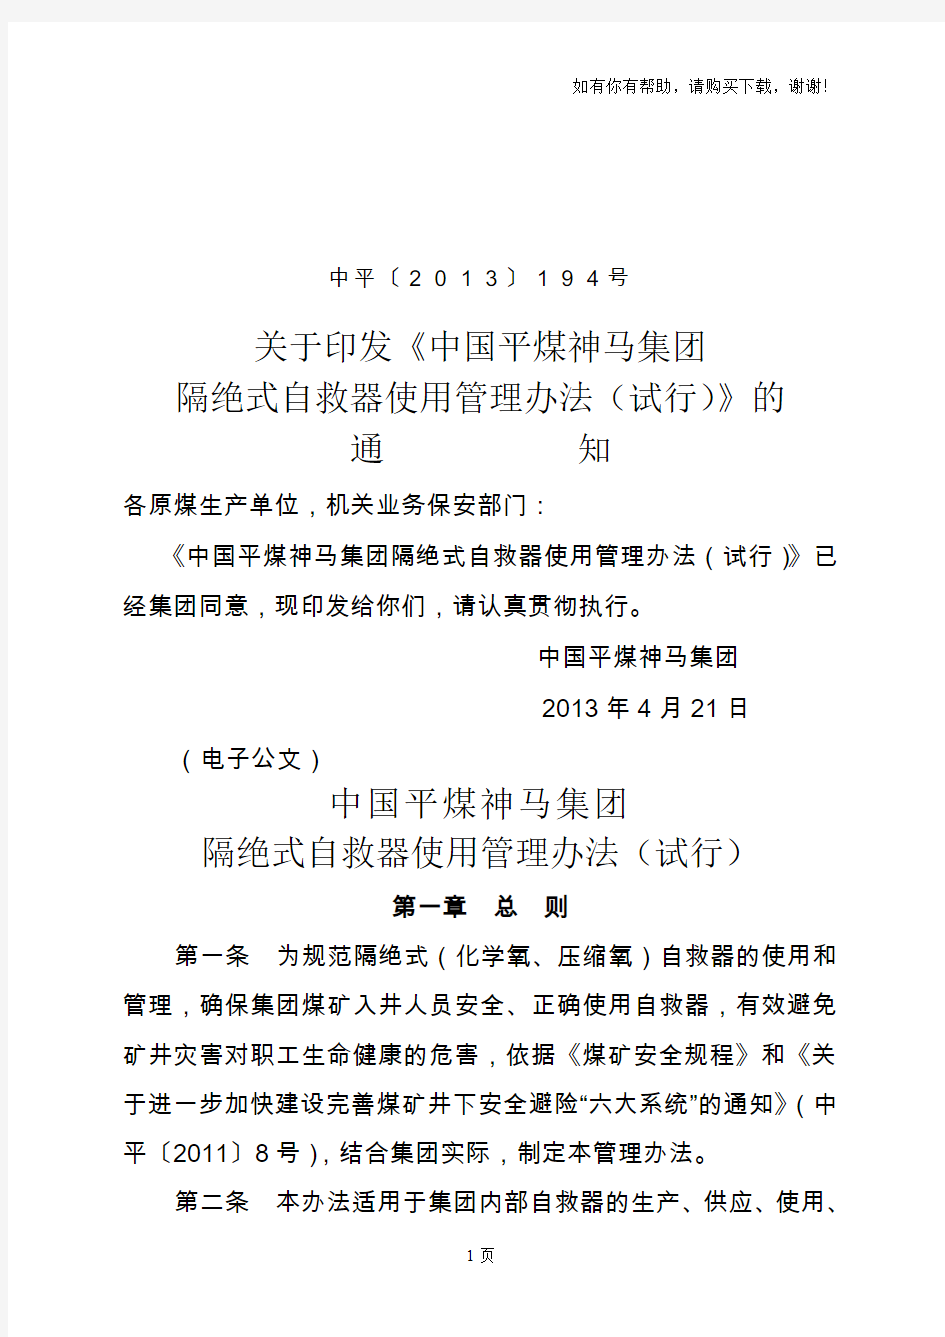 中国平煤神马集团隔绝式自救器使用管理办法(试行)